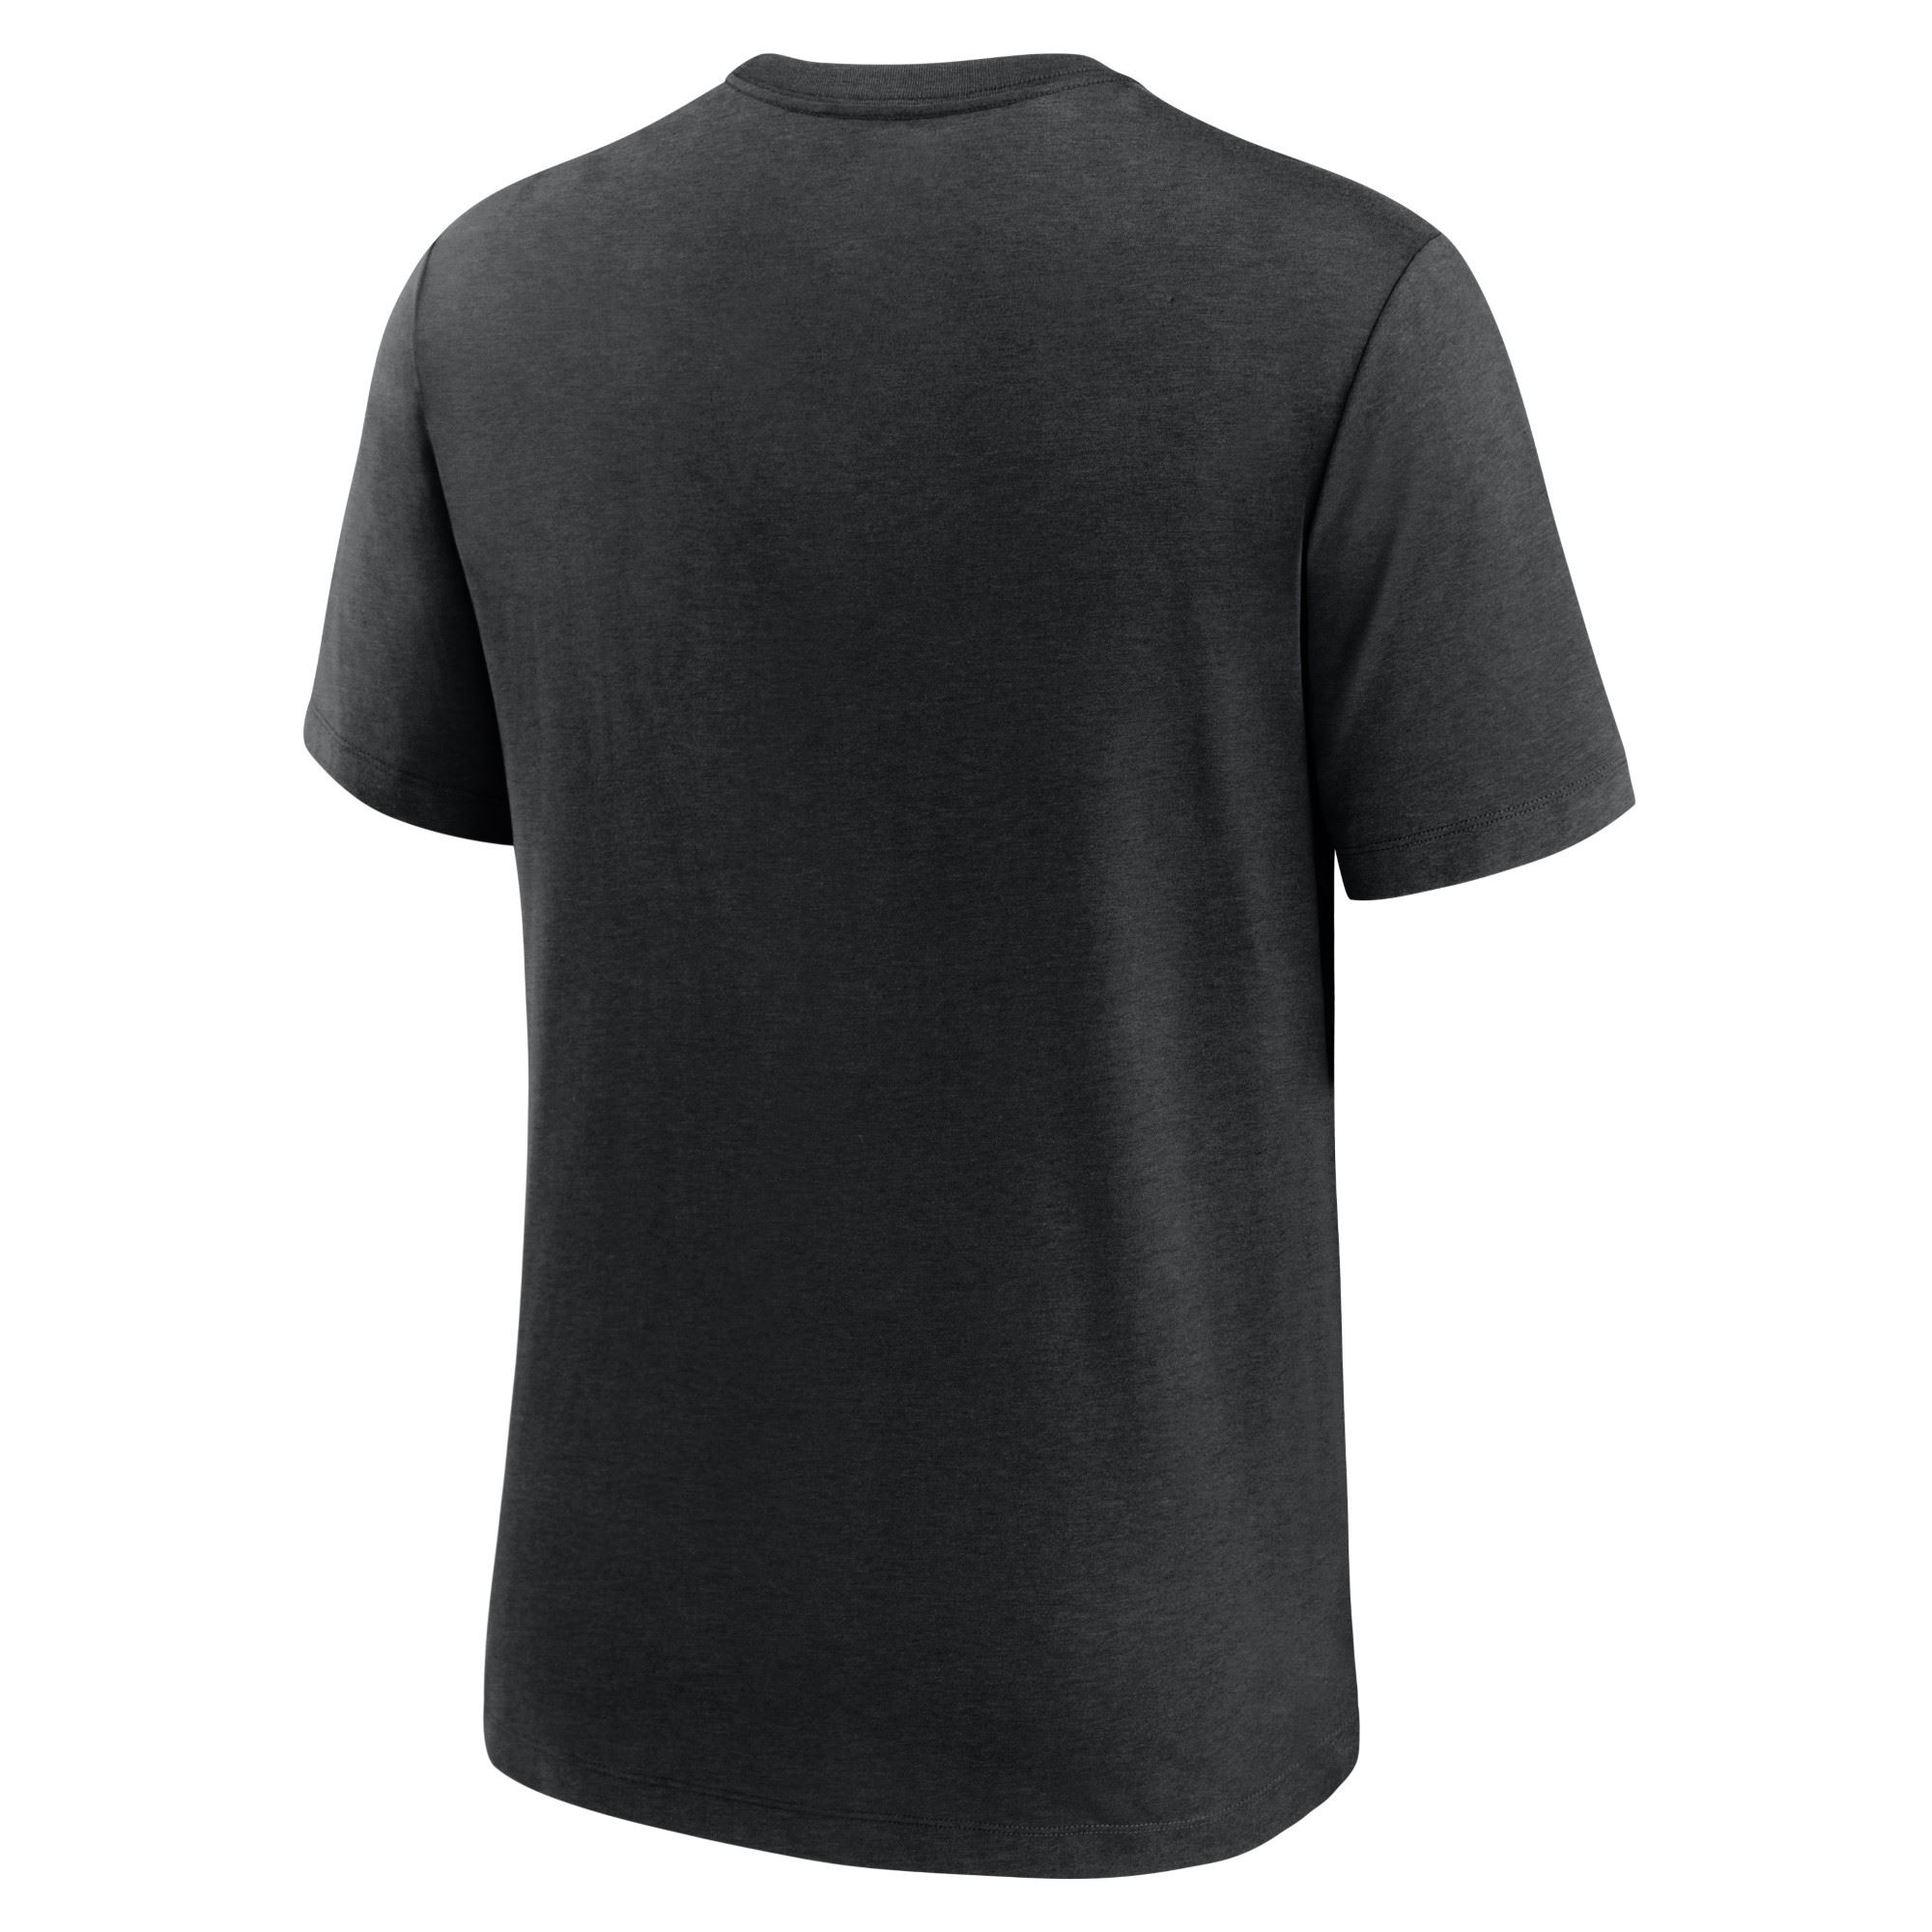 Pittsburgh Steelers NFL Triblend Team Name Black Heather T-Shirt Nike